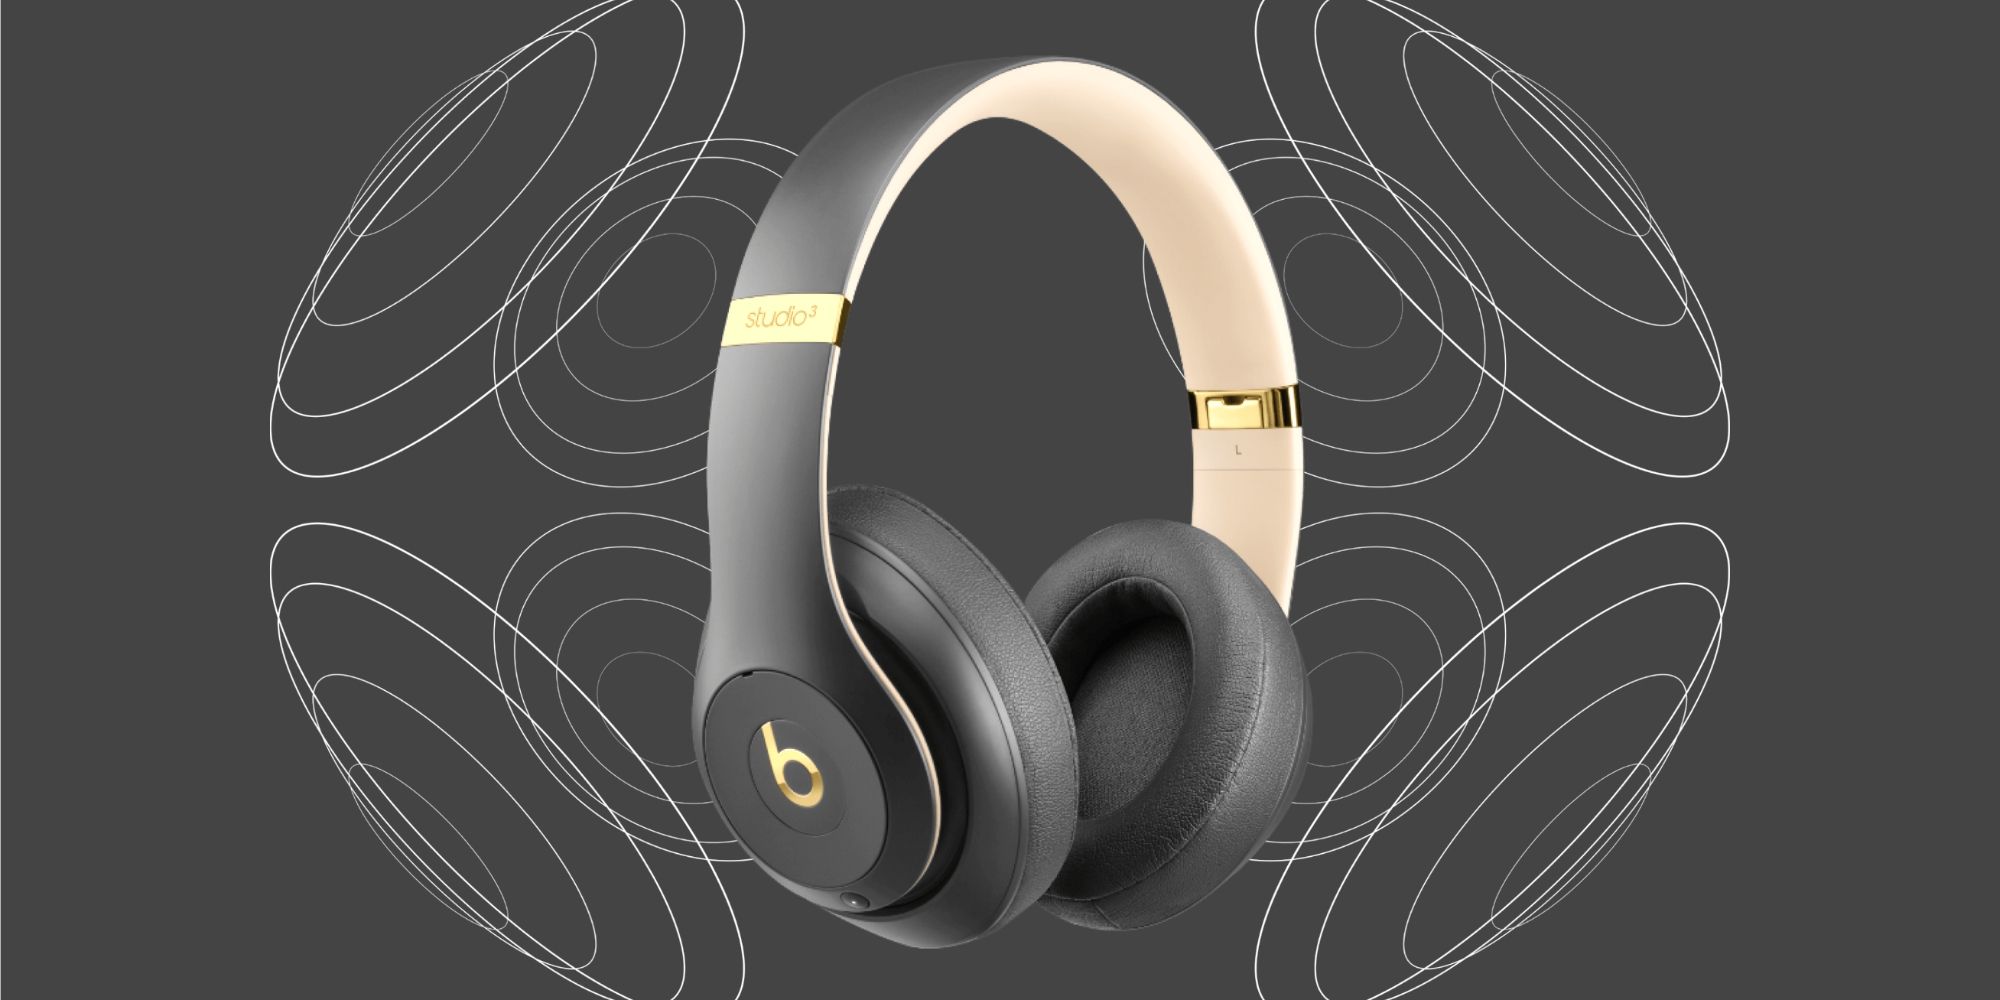 Beats Studio 3 wireless headphones in Shadow gray color